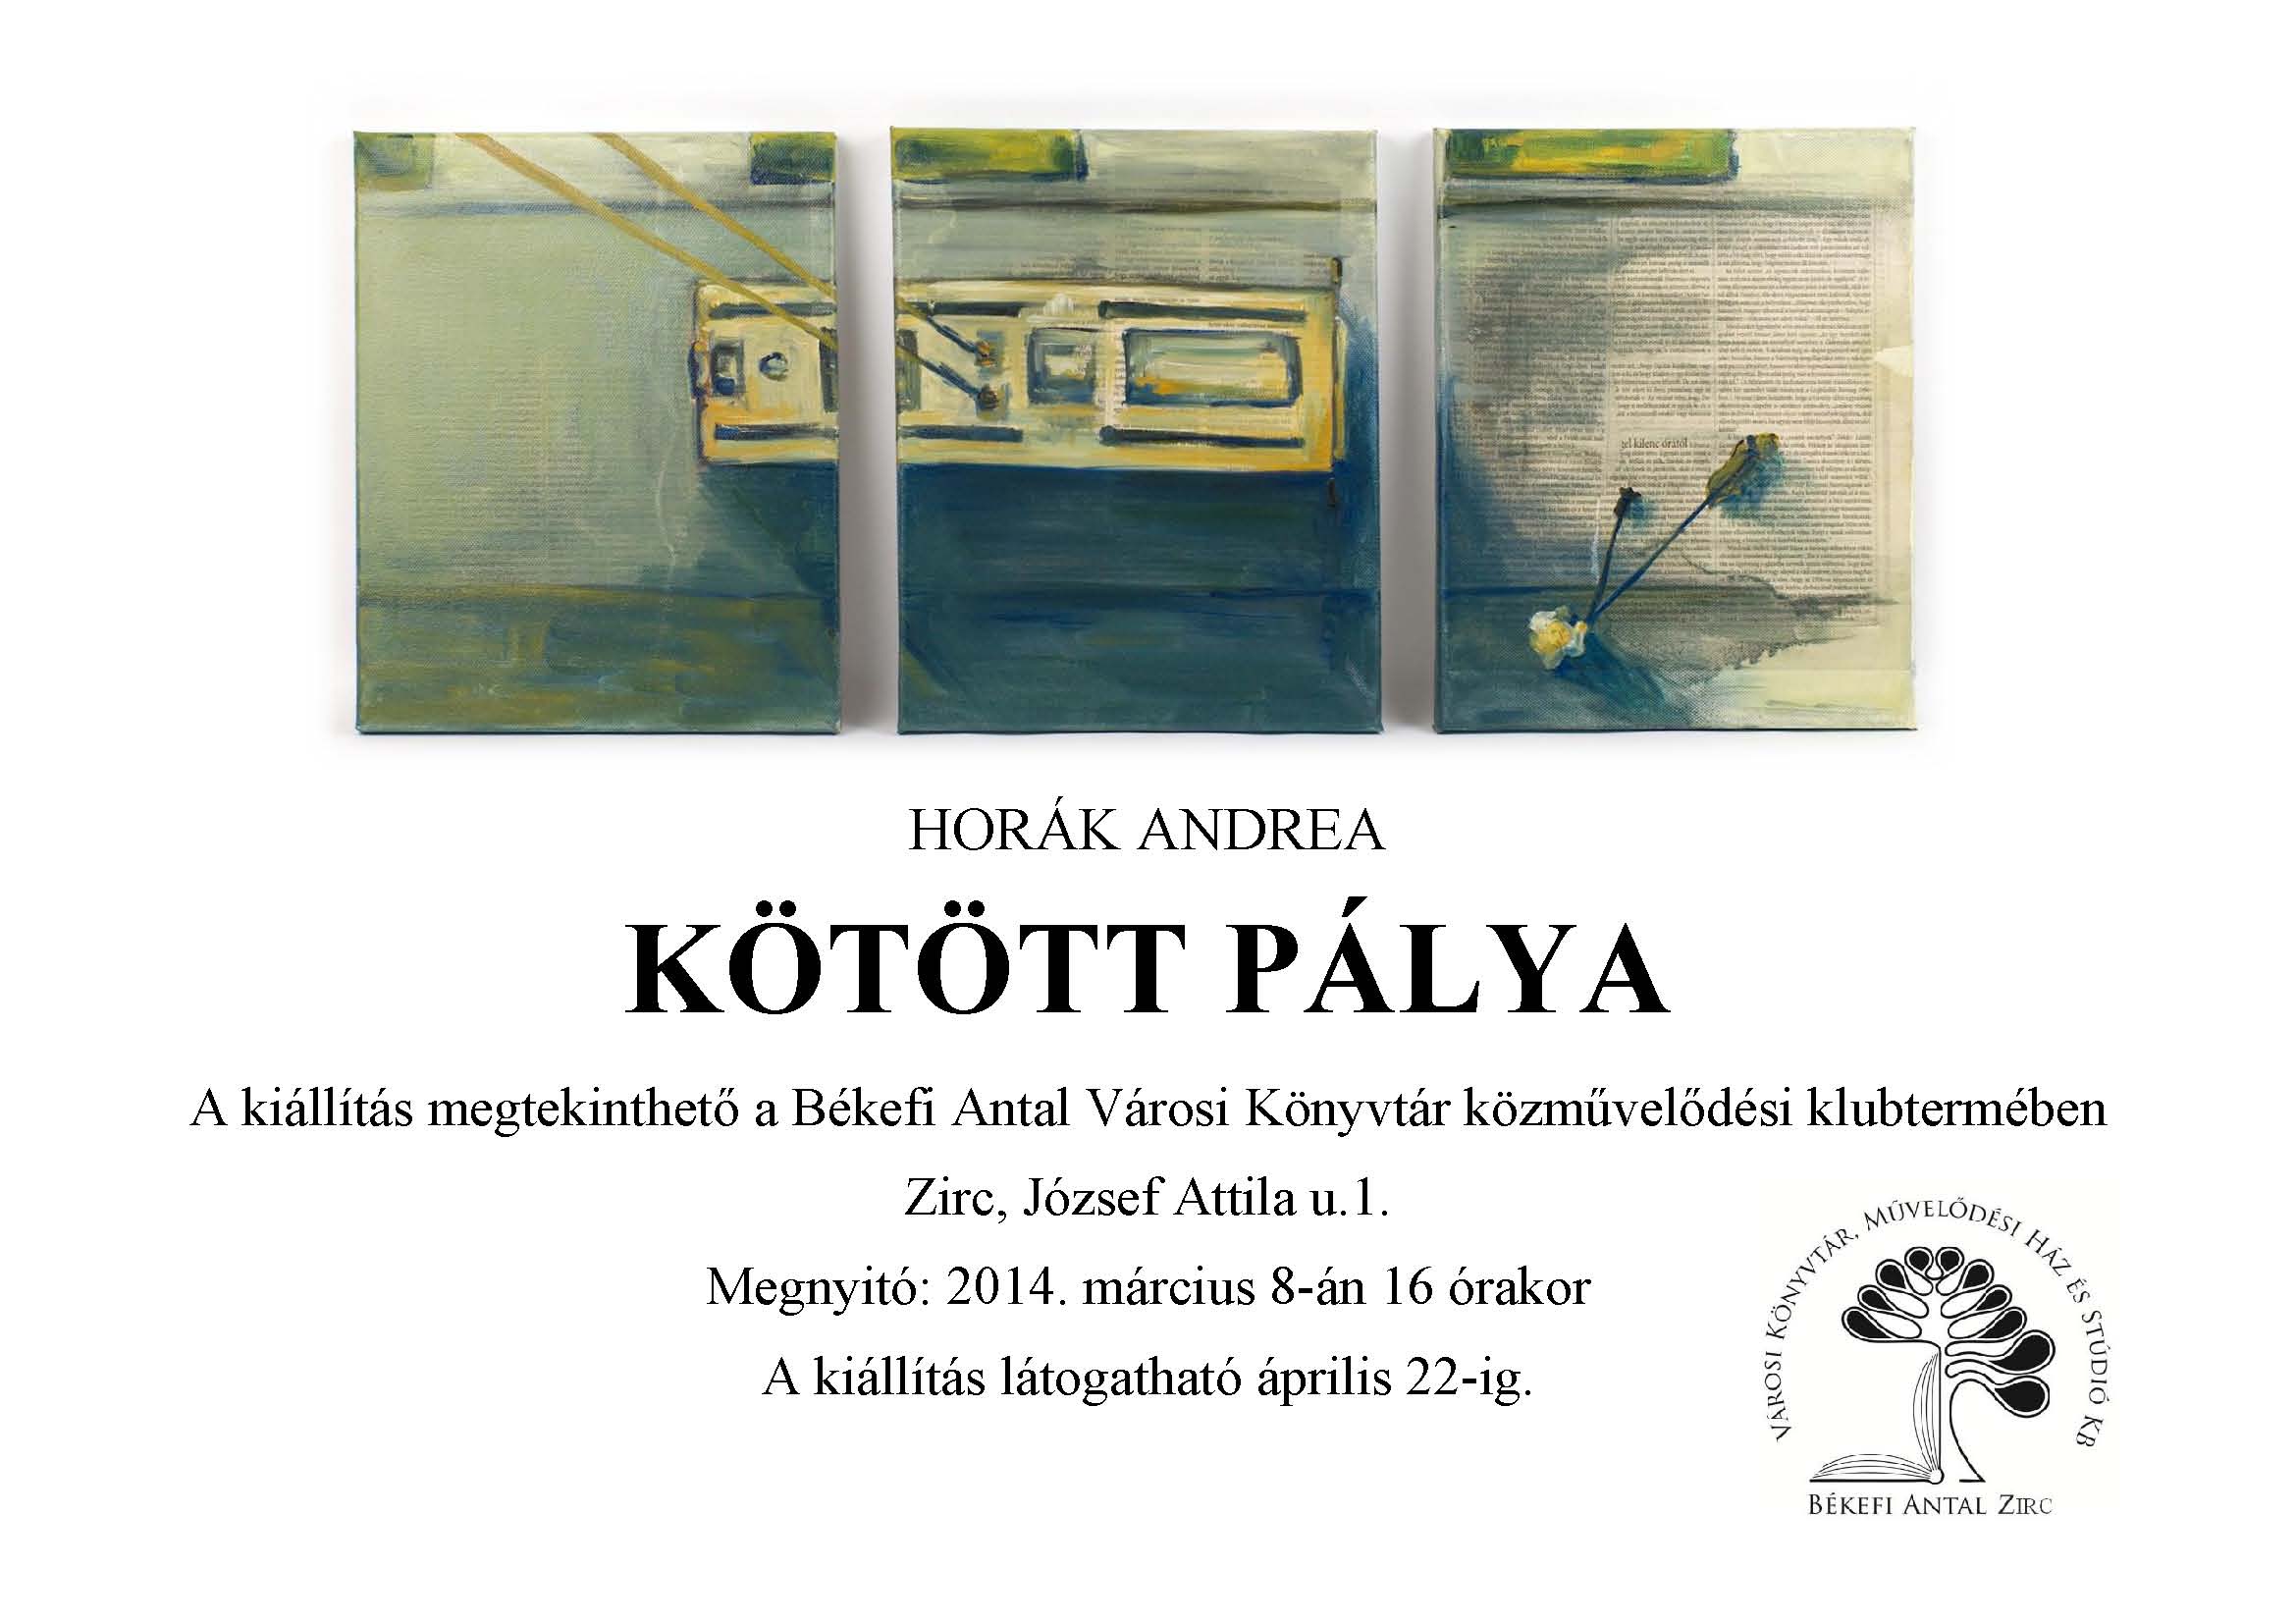 Horák Andrea - Kötött pálya kiállítás plakát Zirc (1).jpg